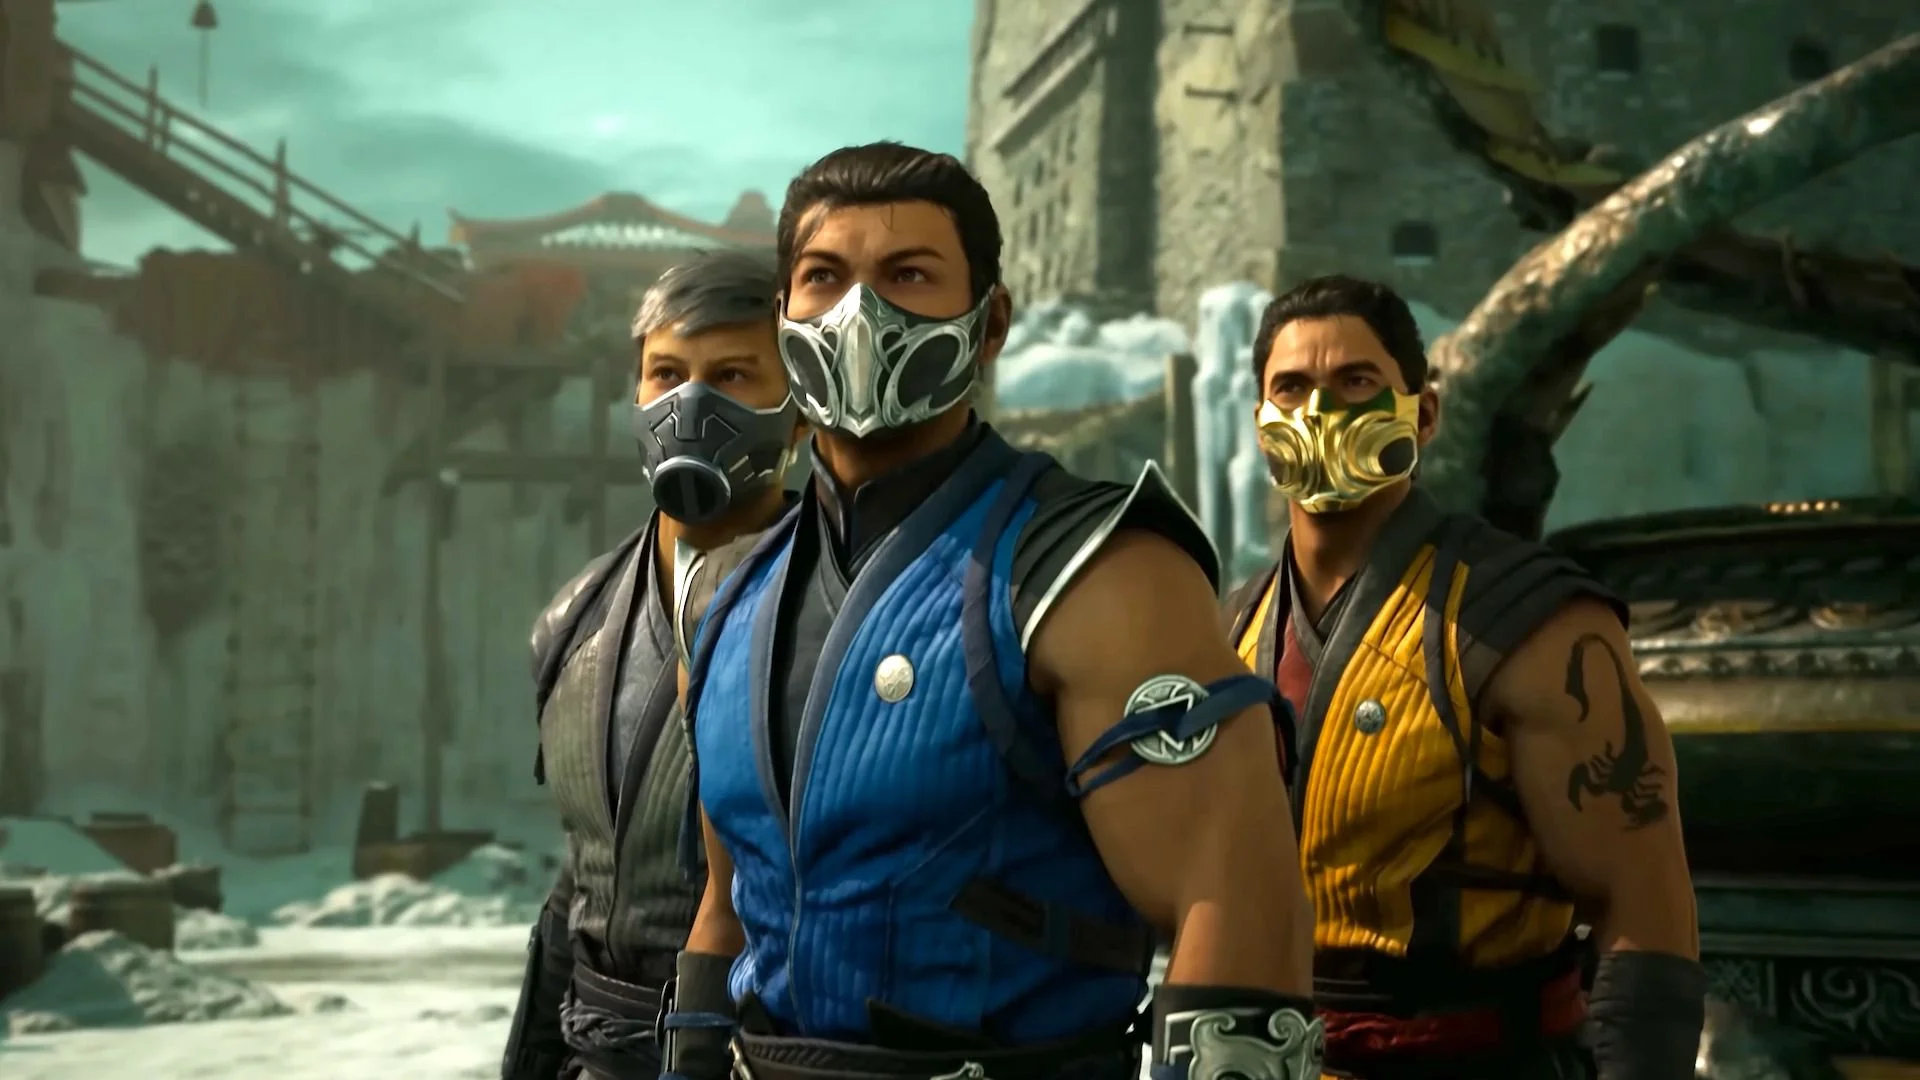 Mortal Kombat 1 - Como Destravar Todos os Personagens e Kameos - PSX Brasil